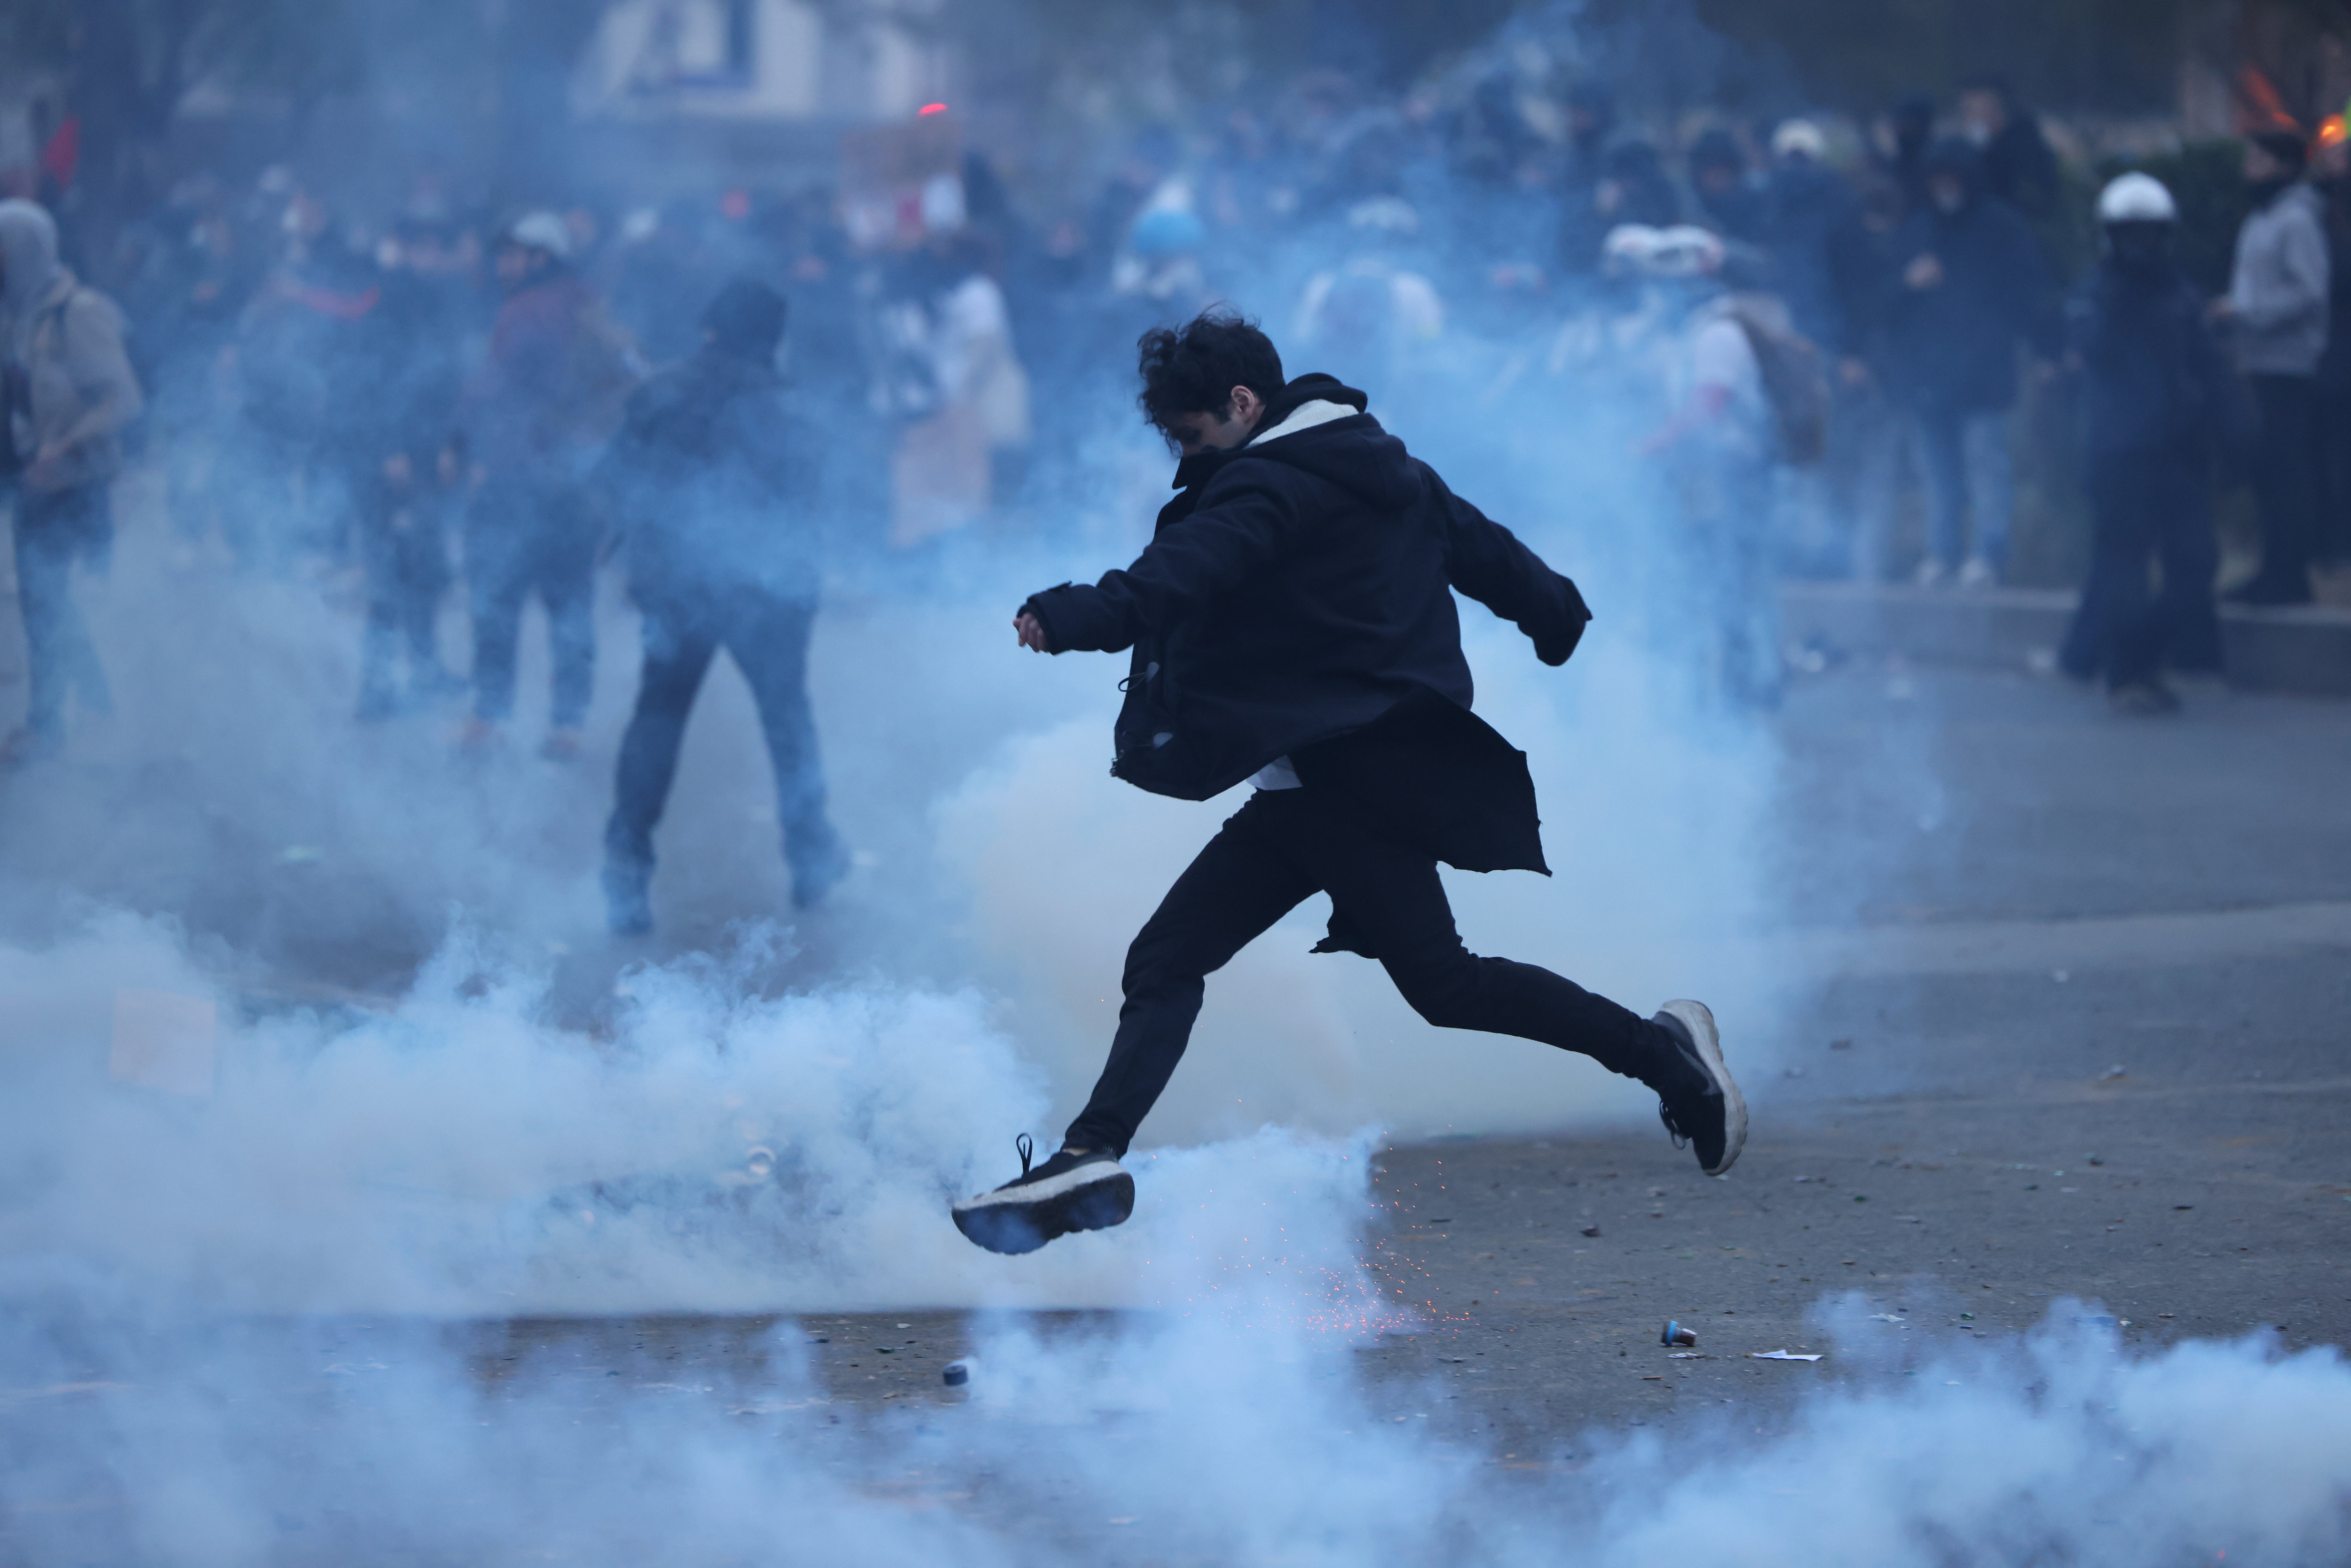 En marge de la manifestation parisienne, des incidents ont eu lieu près de la place de la Nation, ce mardi, sans que les heurts ne dégénèrent en affrontements violents avec les forces de l'ordre. LP/Arnaud Journois